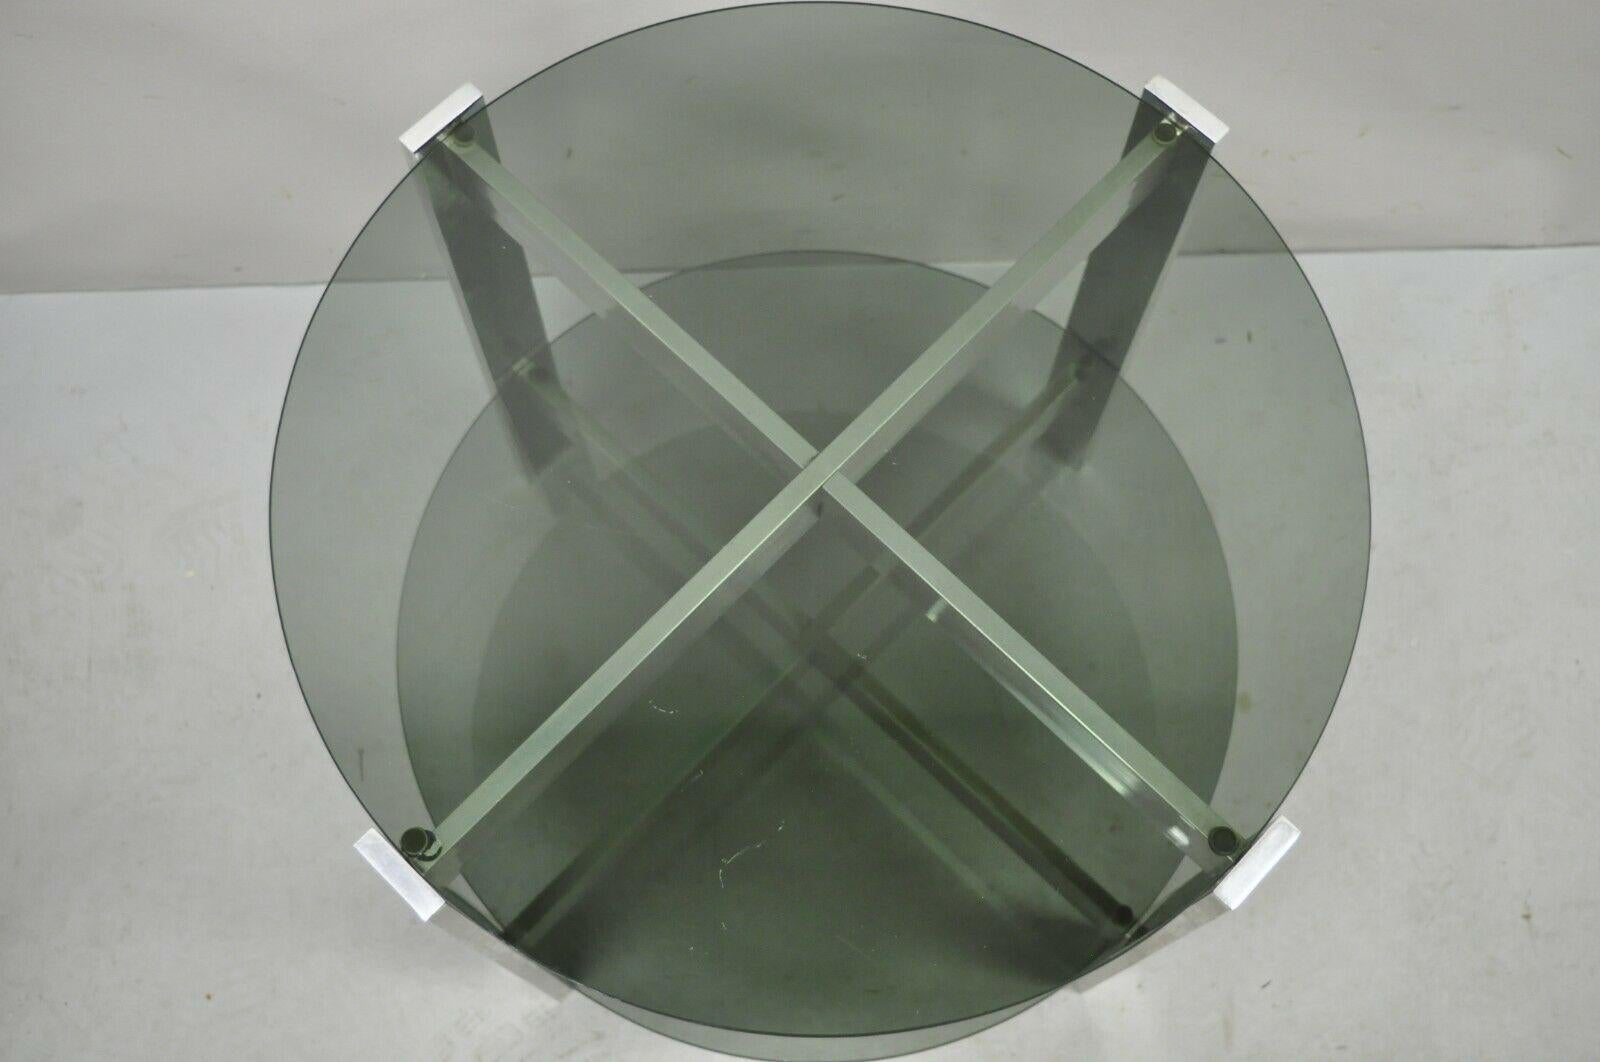 Table d'appoint ronde en verre fumé à 2 niveaux avec base en aluminium, de style moderne du milieu du siècle dernier. L'article comprend (2) plateaux ronds en verre fumé, un cadre en aluminium moulé en forme de X, un style et une forme modernistes